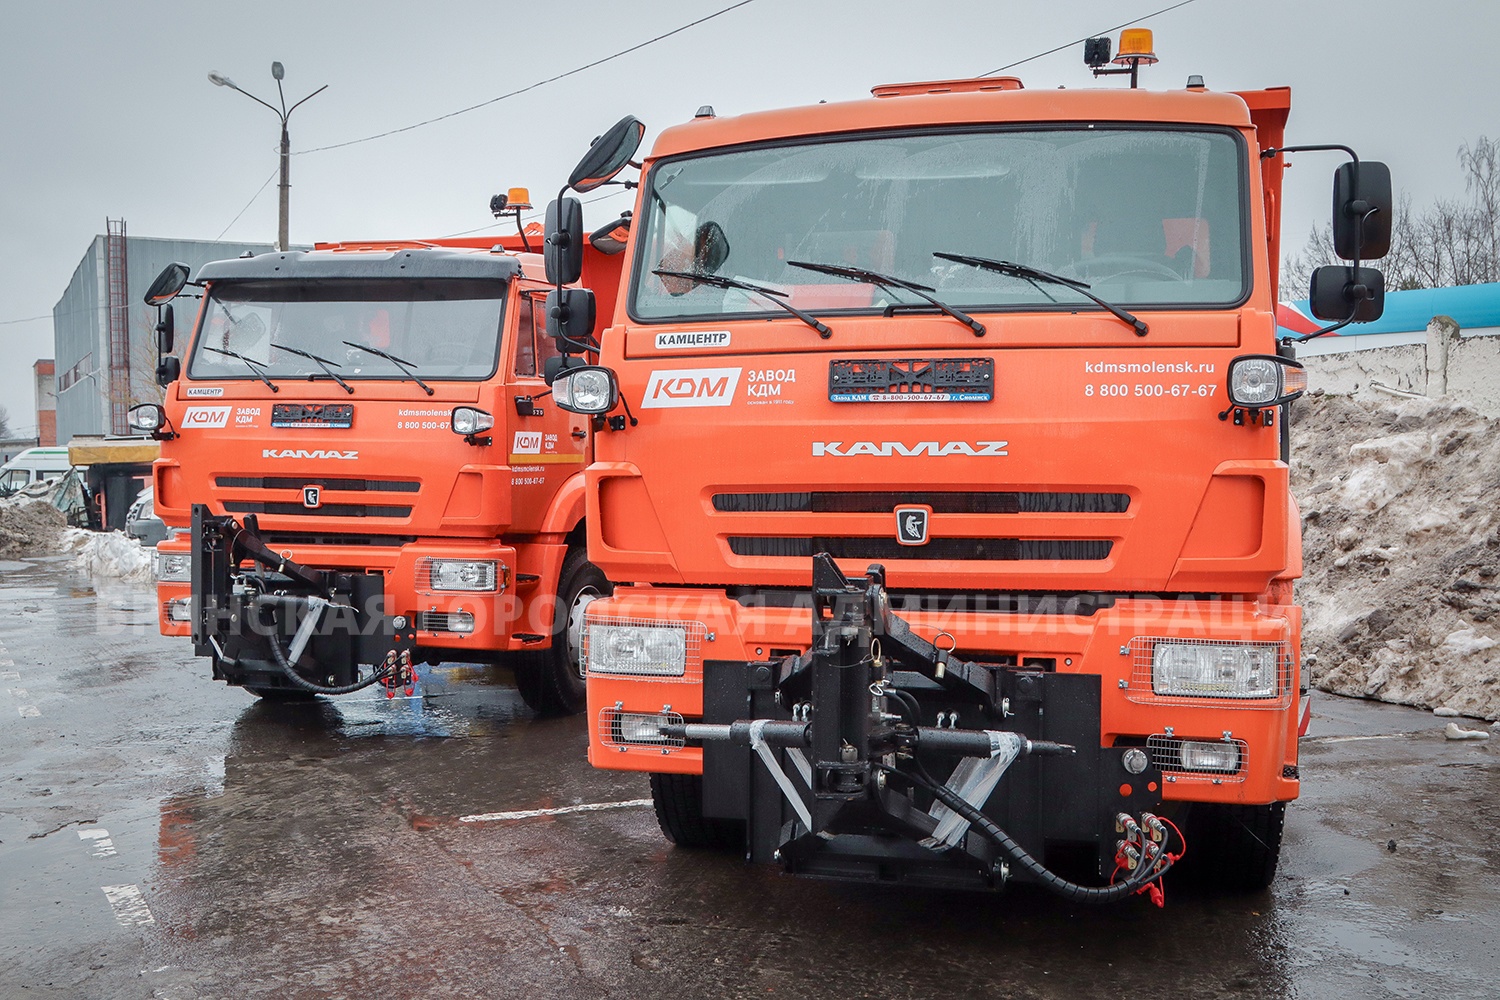 Брянск получил шесть новых 20-тонных комбинированных дорожных машин